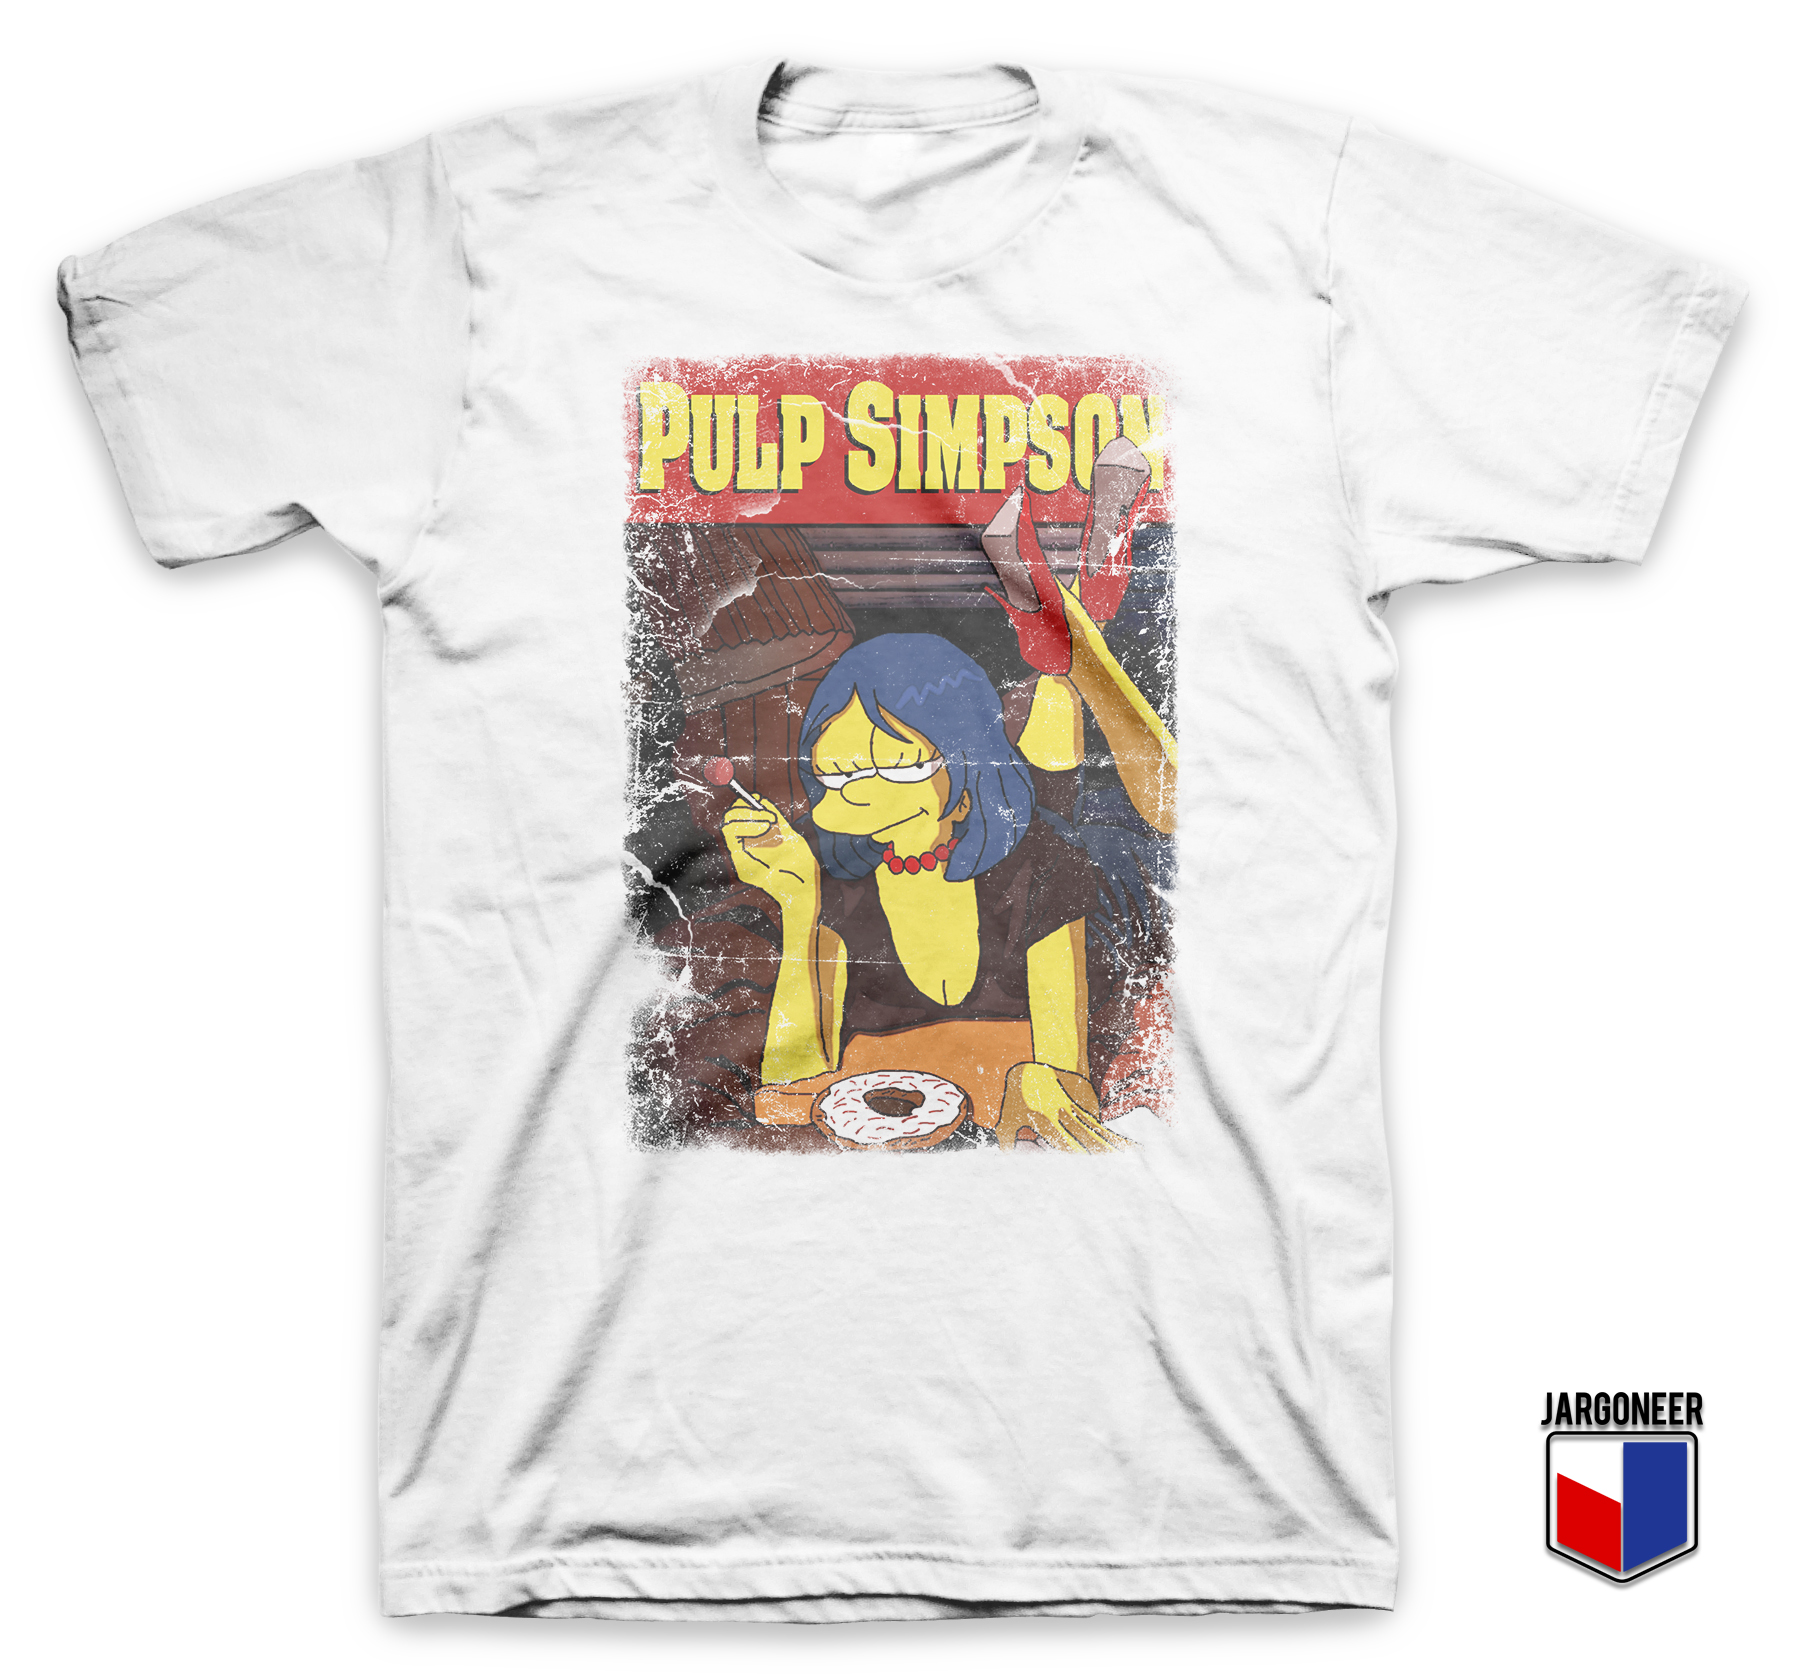 Pulp Simpson White T Shirt - Shop Unique Graphic Cool Shirt Designs